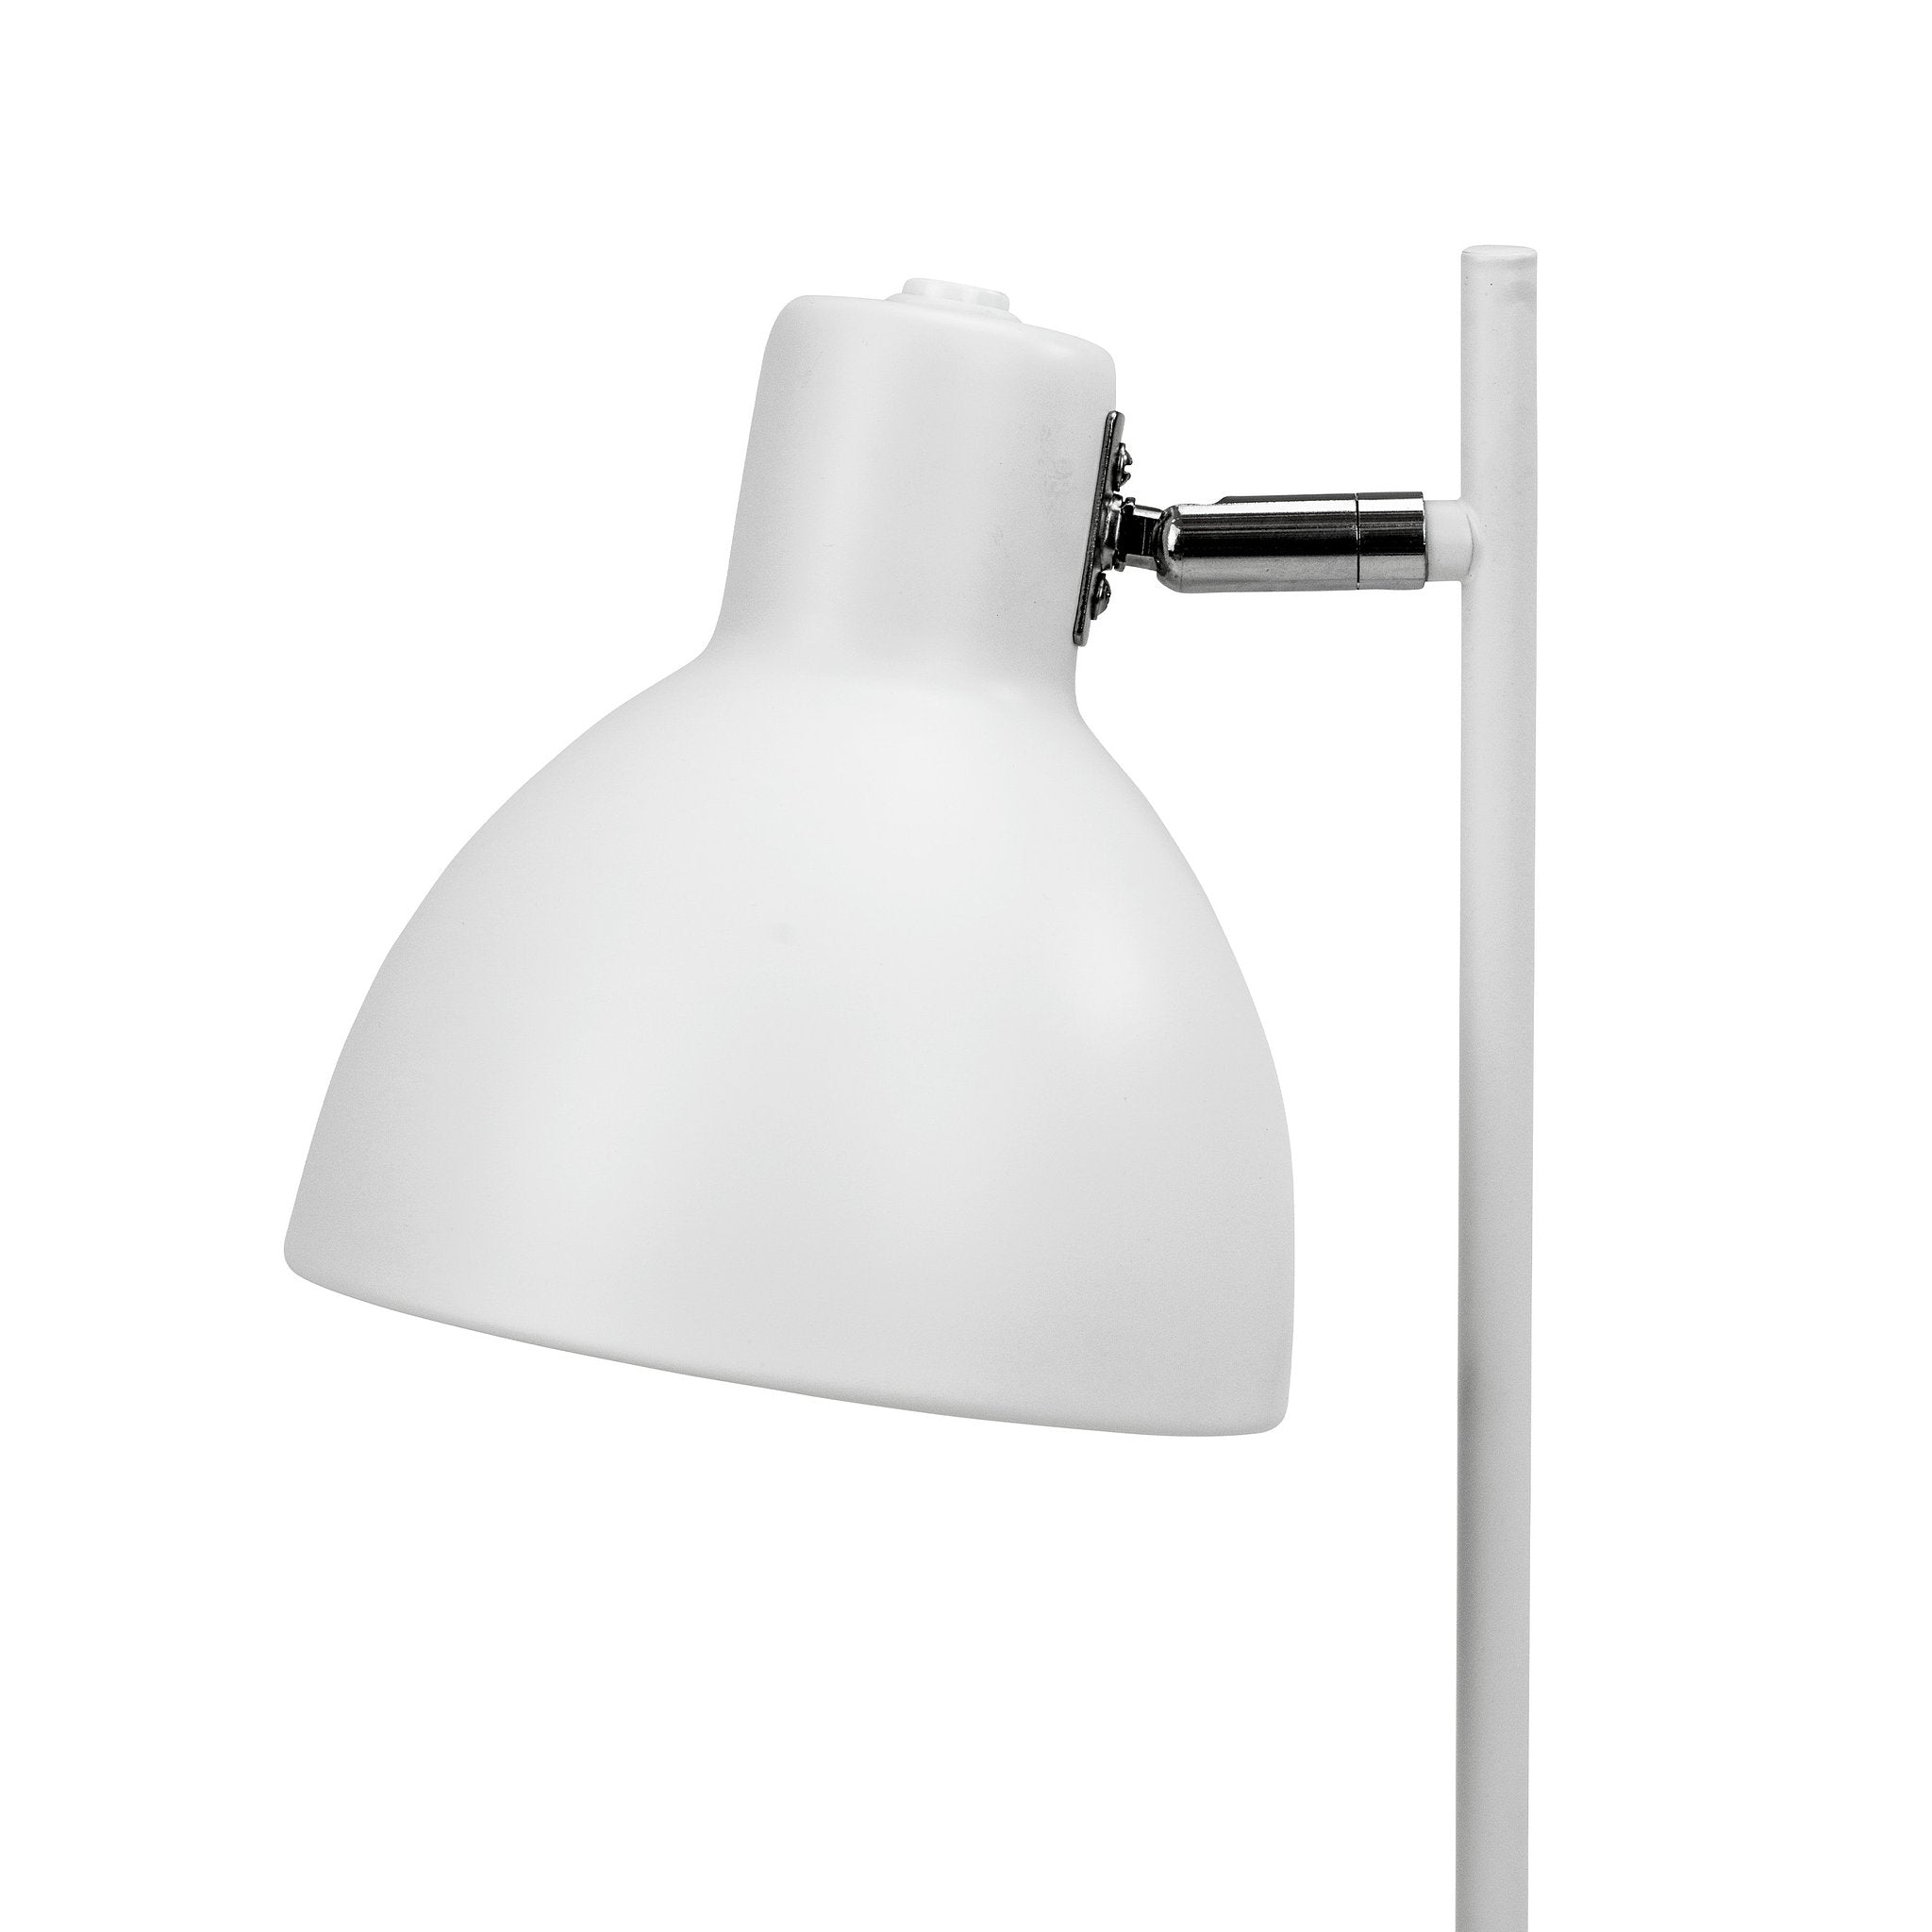 Skagen table lamp white